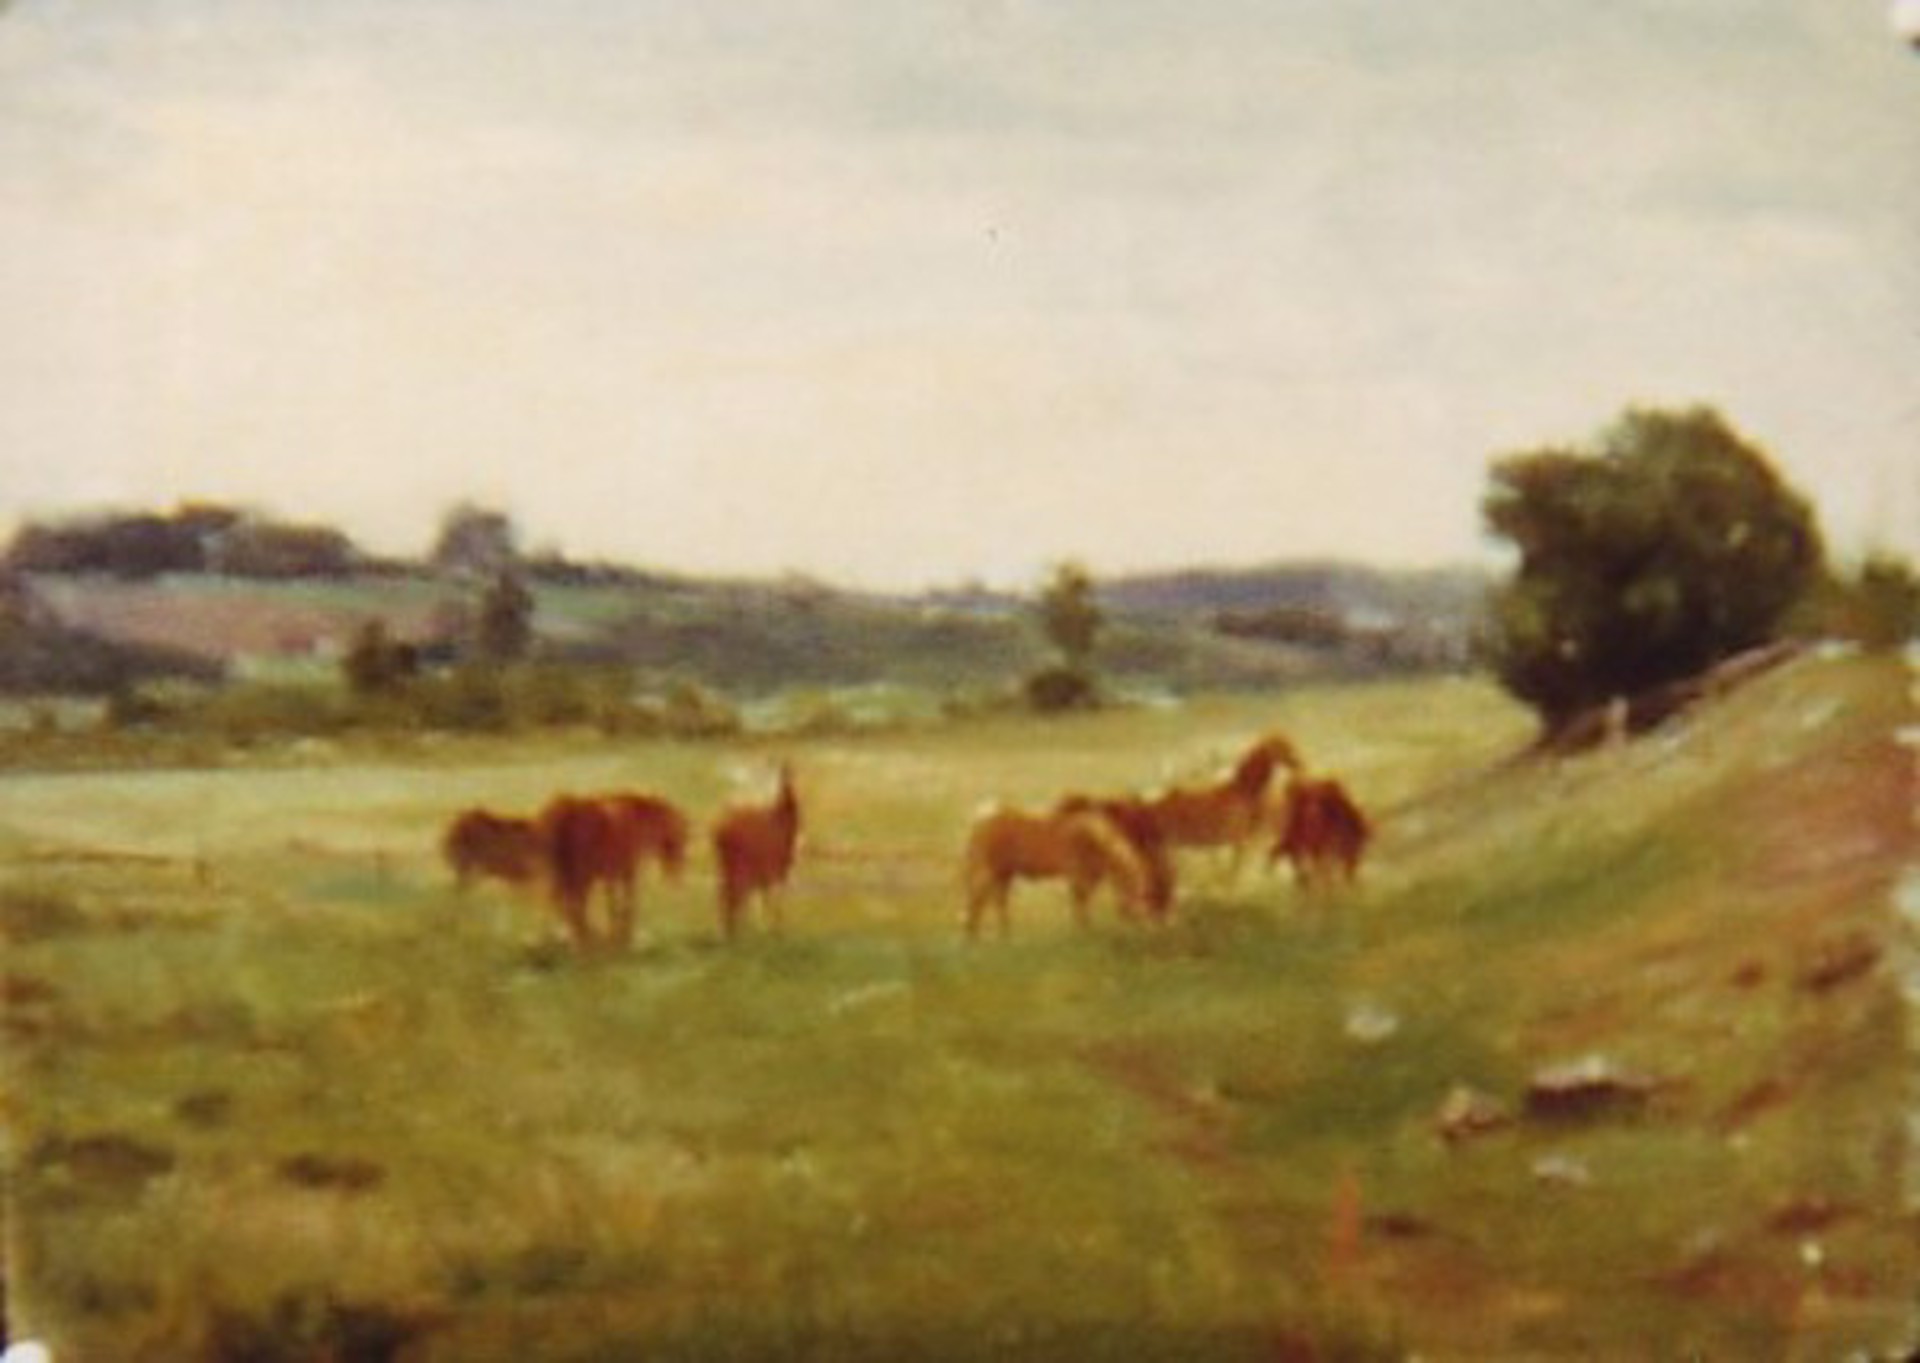 Horses in Field by Ilmar Kimm